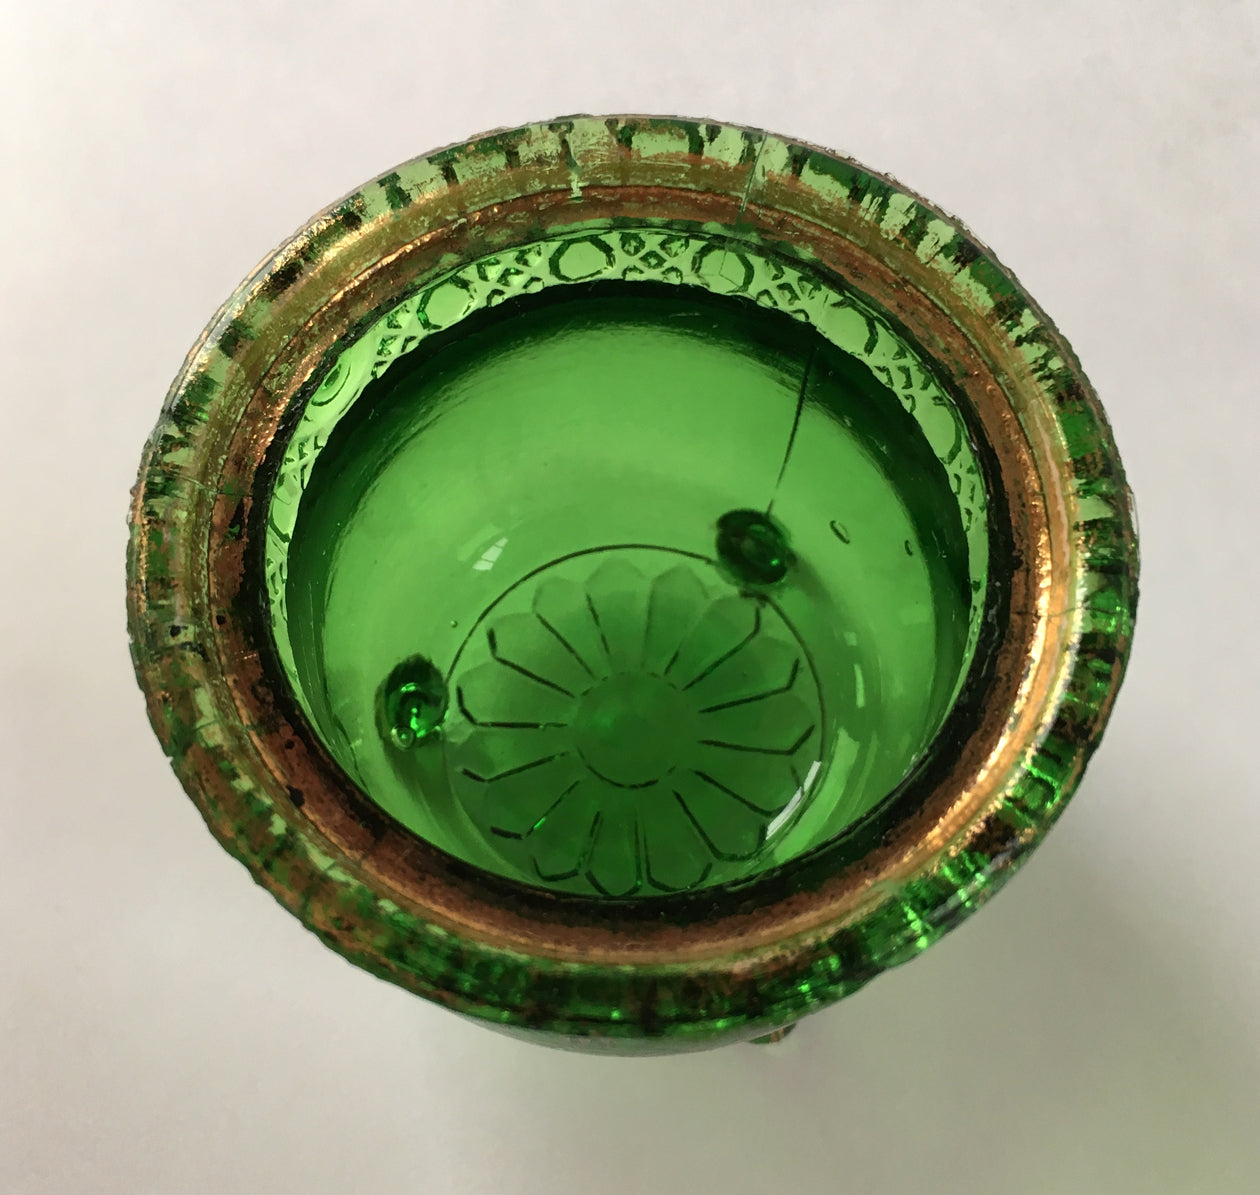 EAPG Witch's Kettle Green Glass Souvenir Toothpick Holder inside pot 1